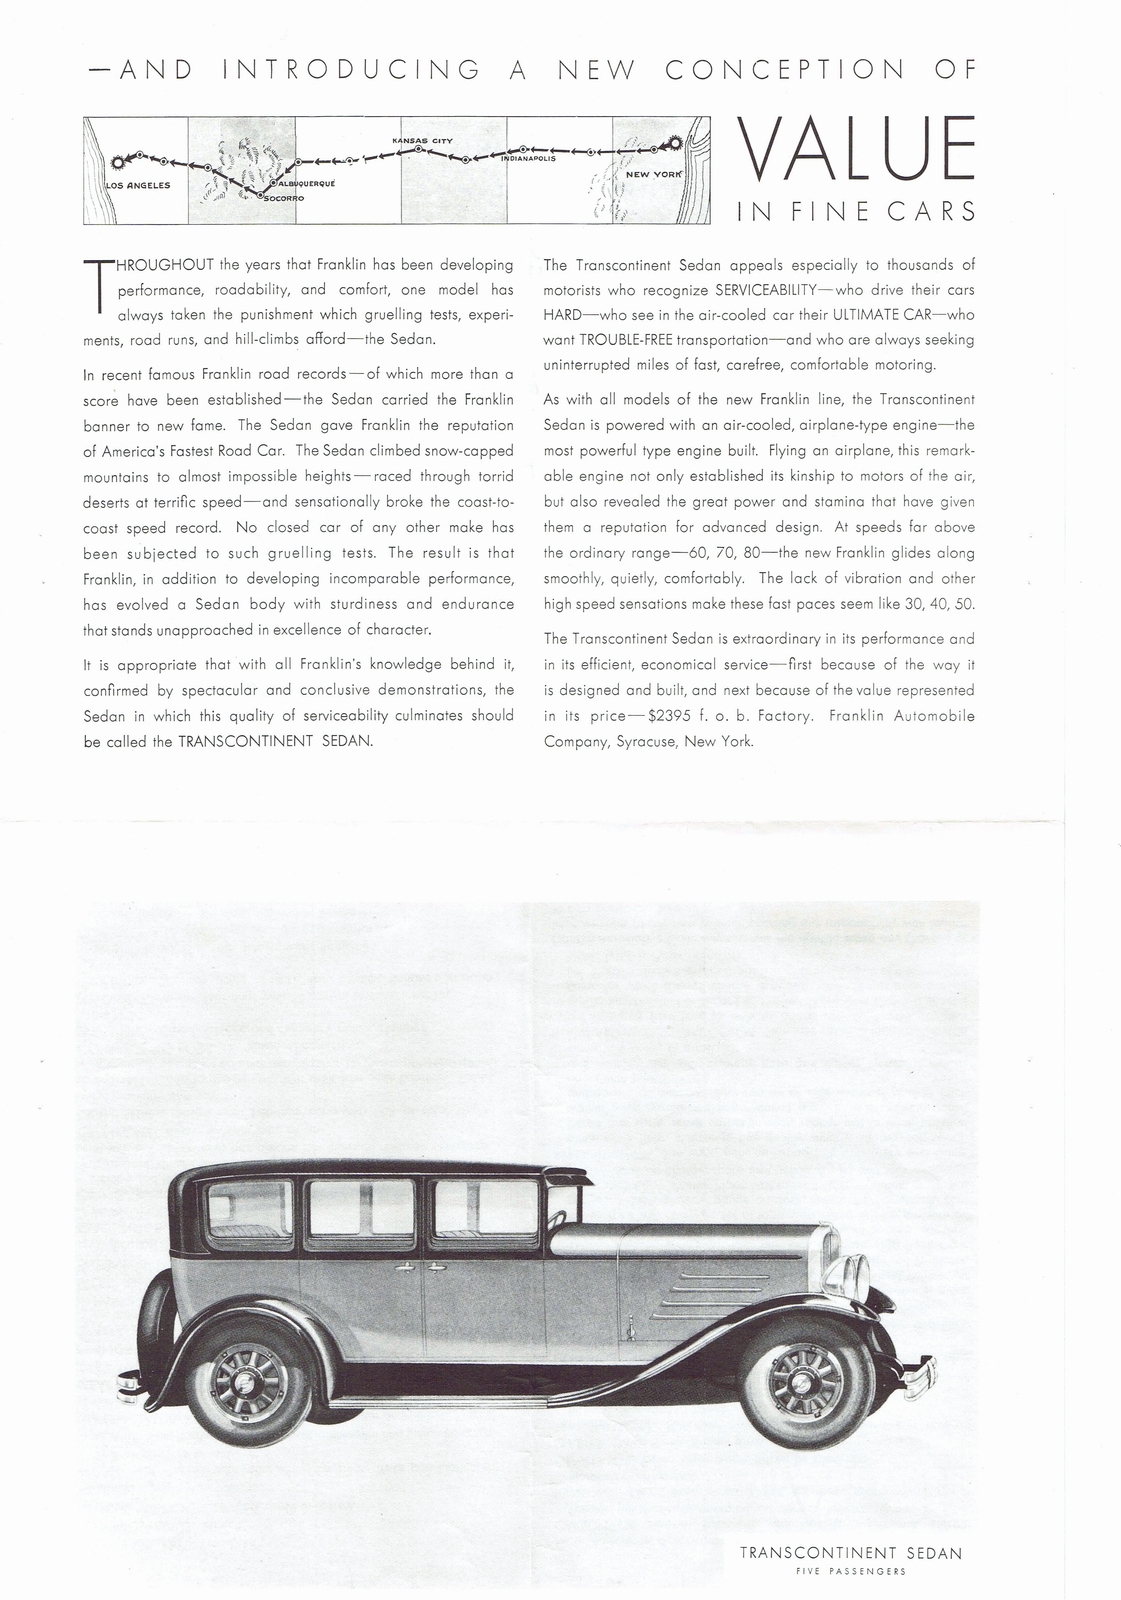 n_1930 Franklin Transcontinent Sedan-02-03.jpg